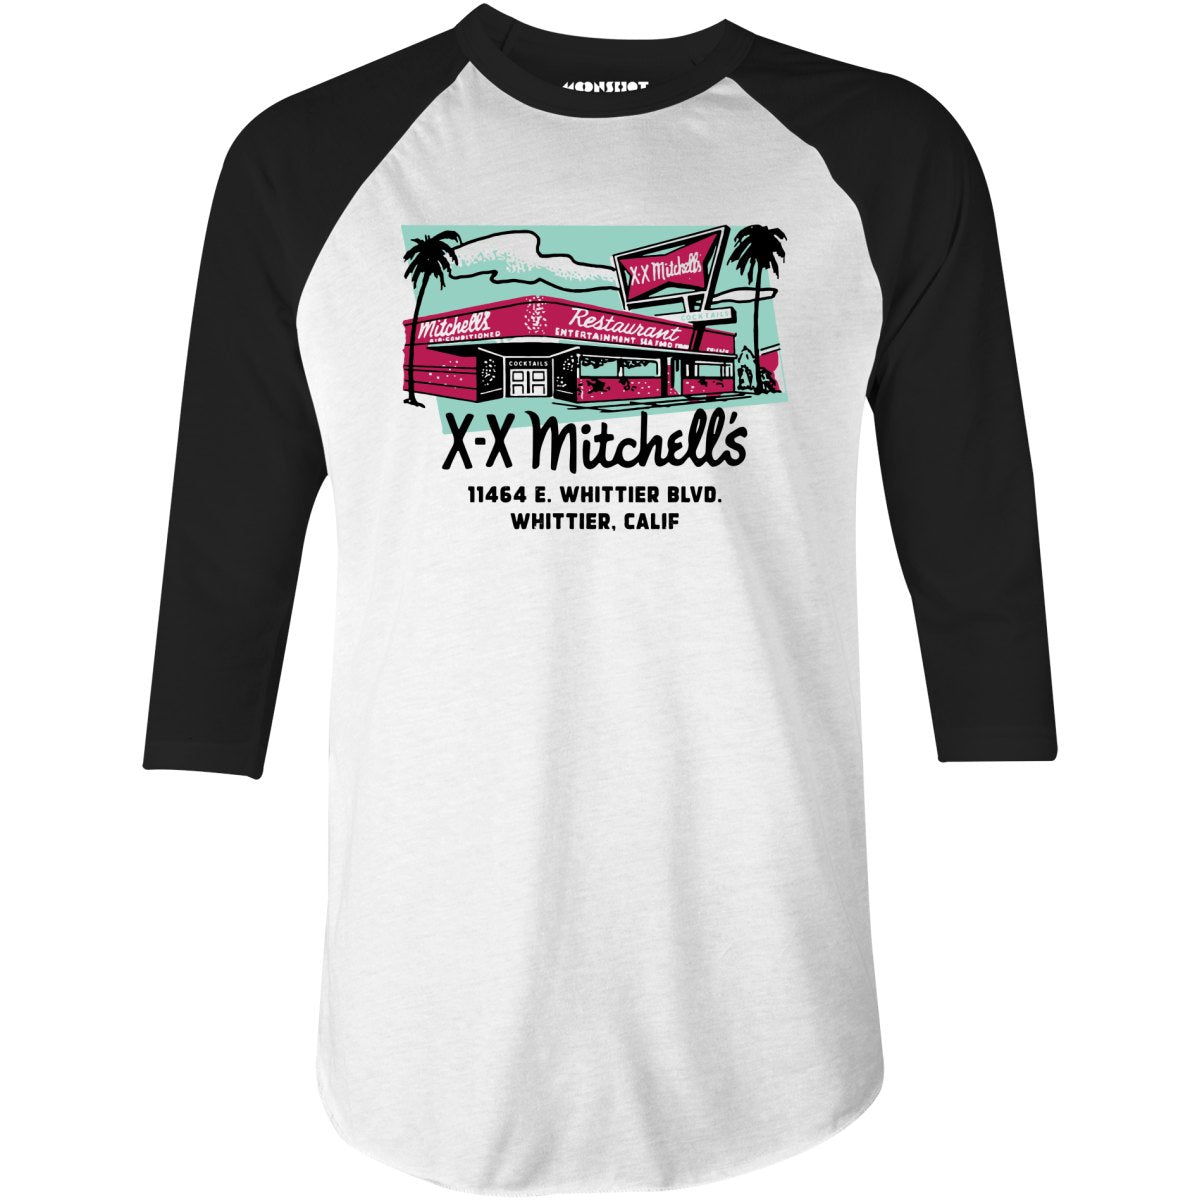 X-X Mitchell's - Whittier, CA - Vintage Restaurant - 3/4 Sleeve Raglan T-Shirt